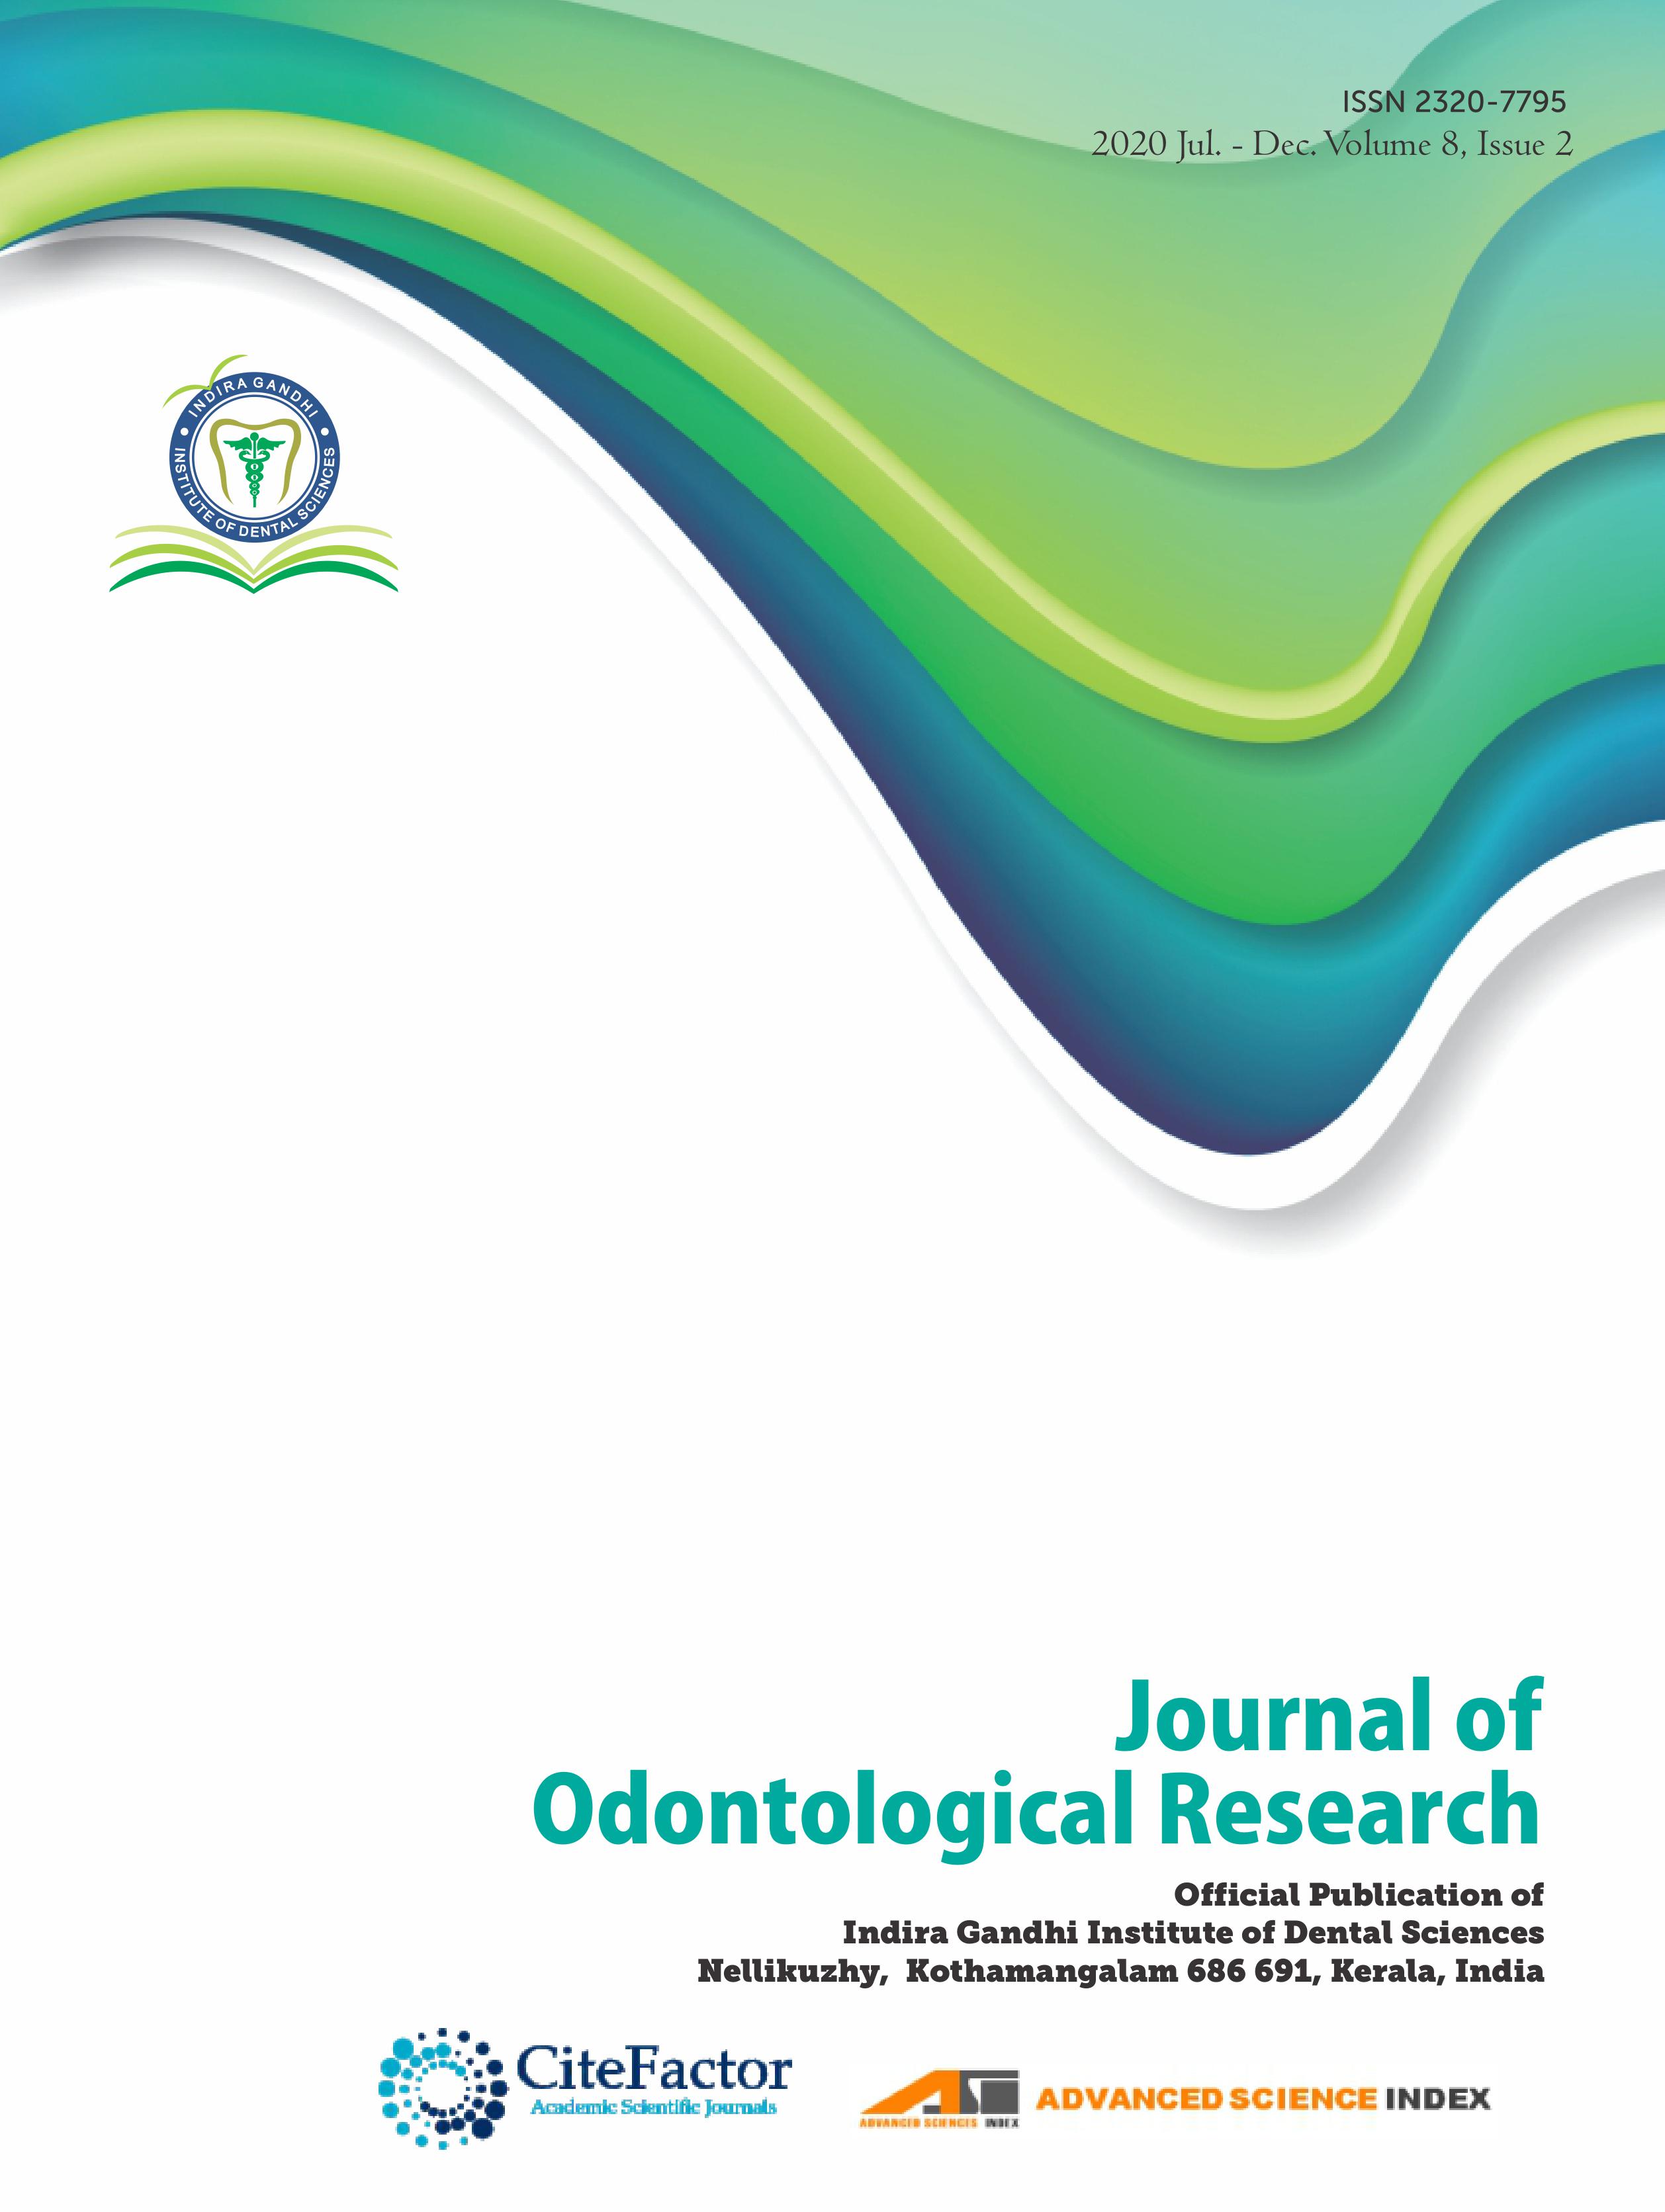 J Odontol Res 2020 Volume 8 Issue 2